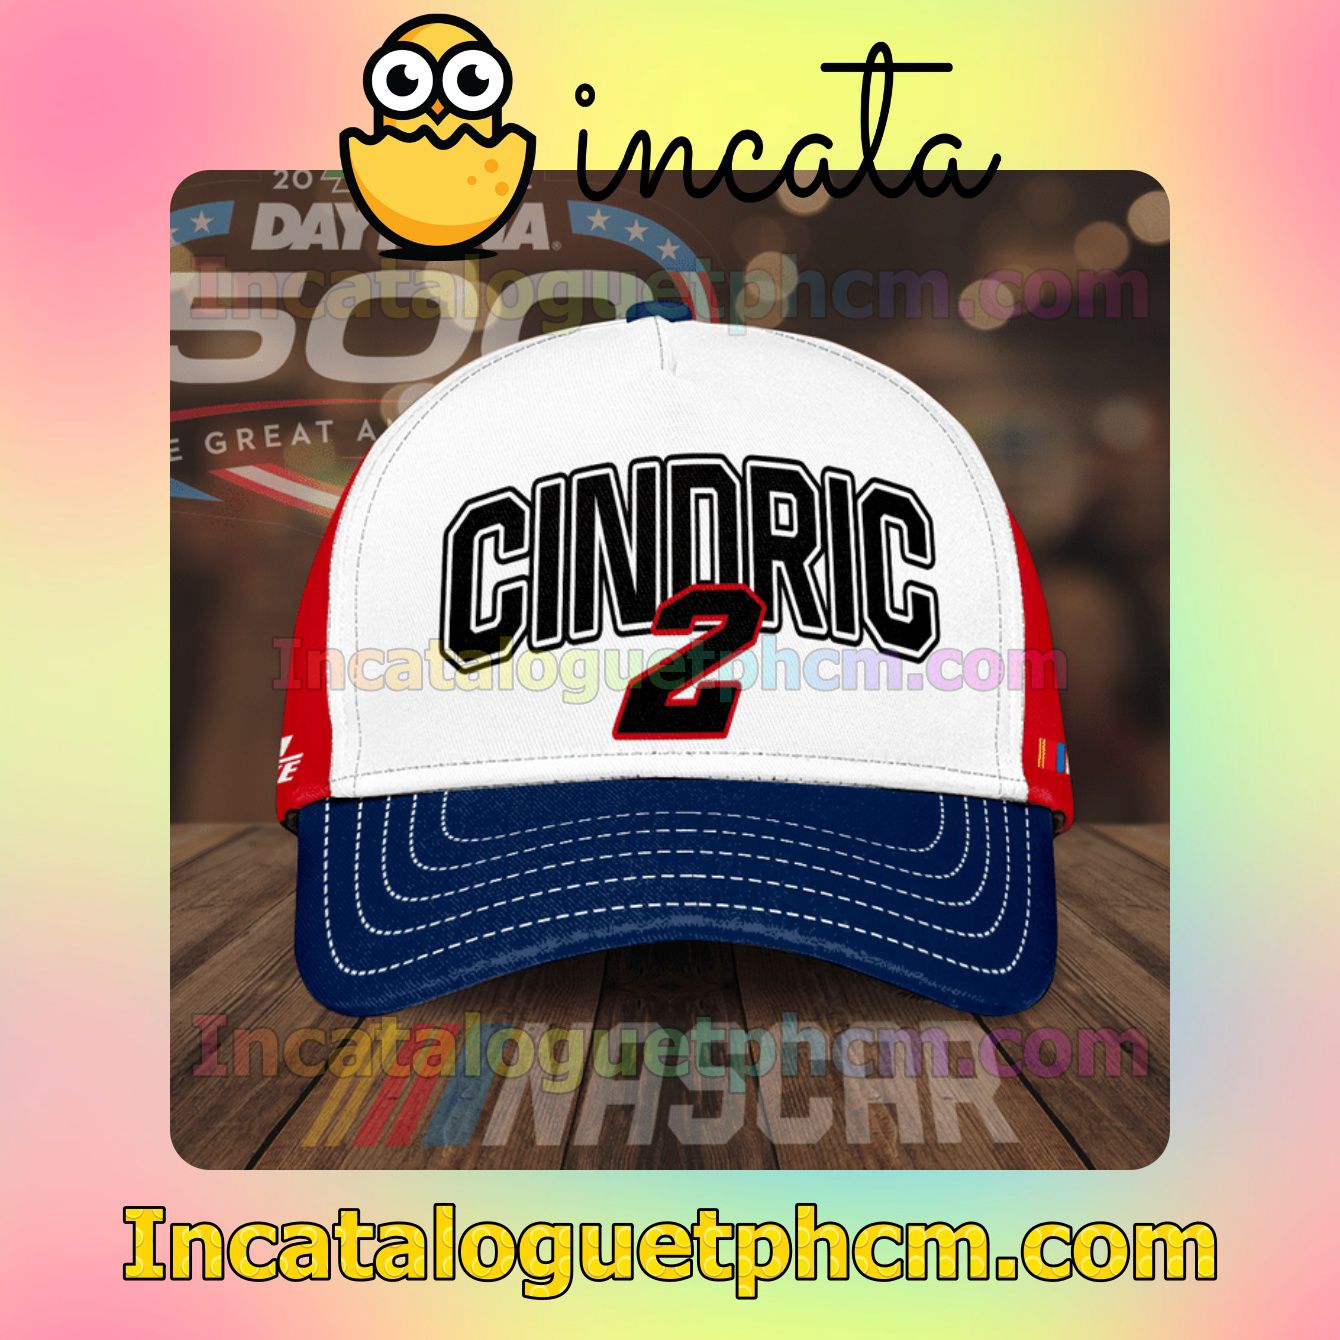 Nascar Daytona 500 Cindric 2 Team Penske Classic Hat Caps Gift For Men